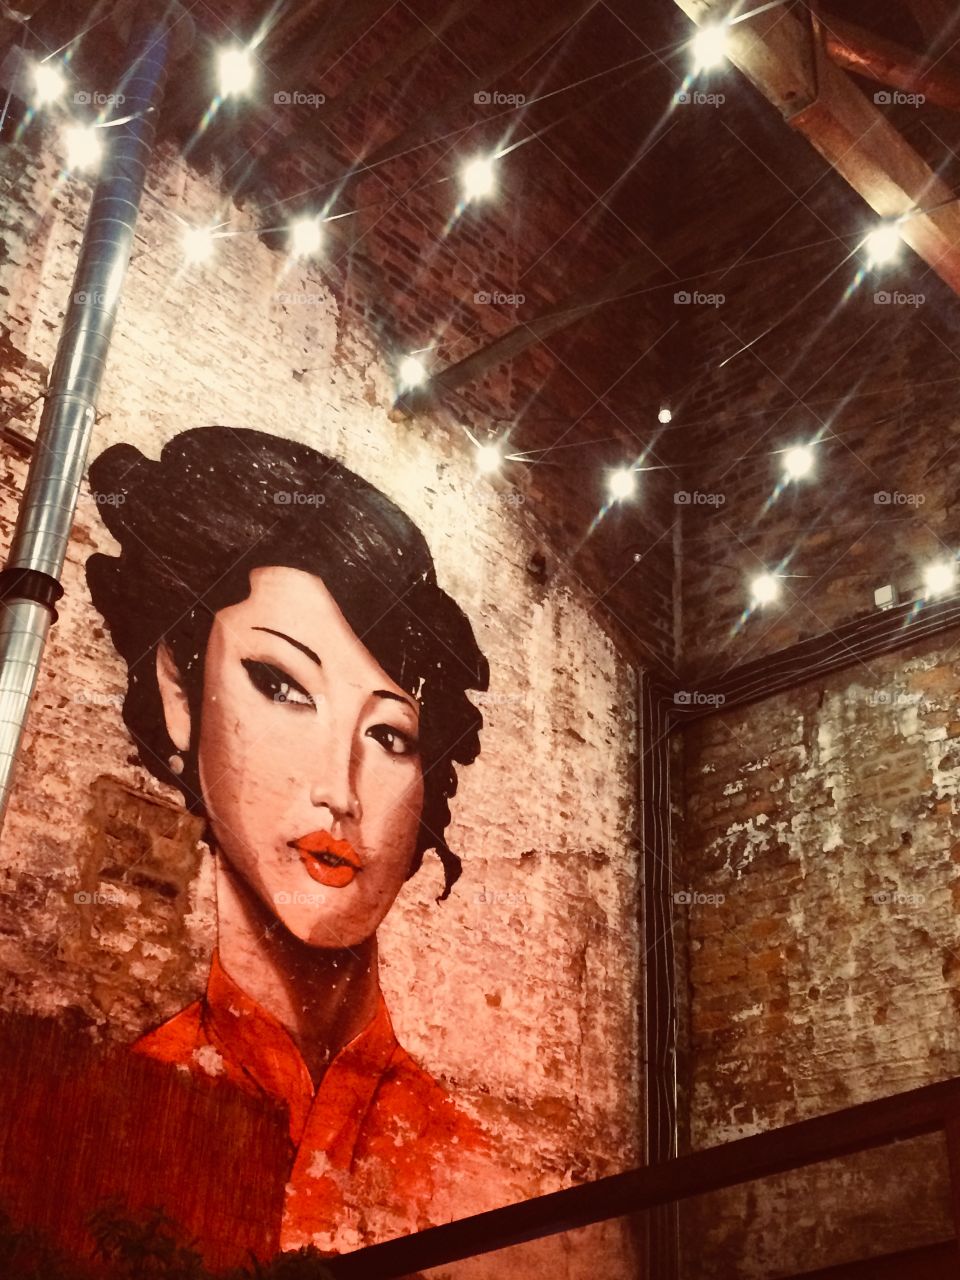 Tiger bar, Liverpool.